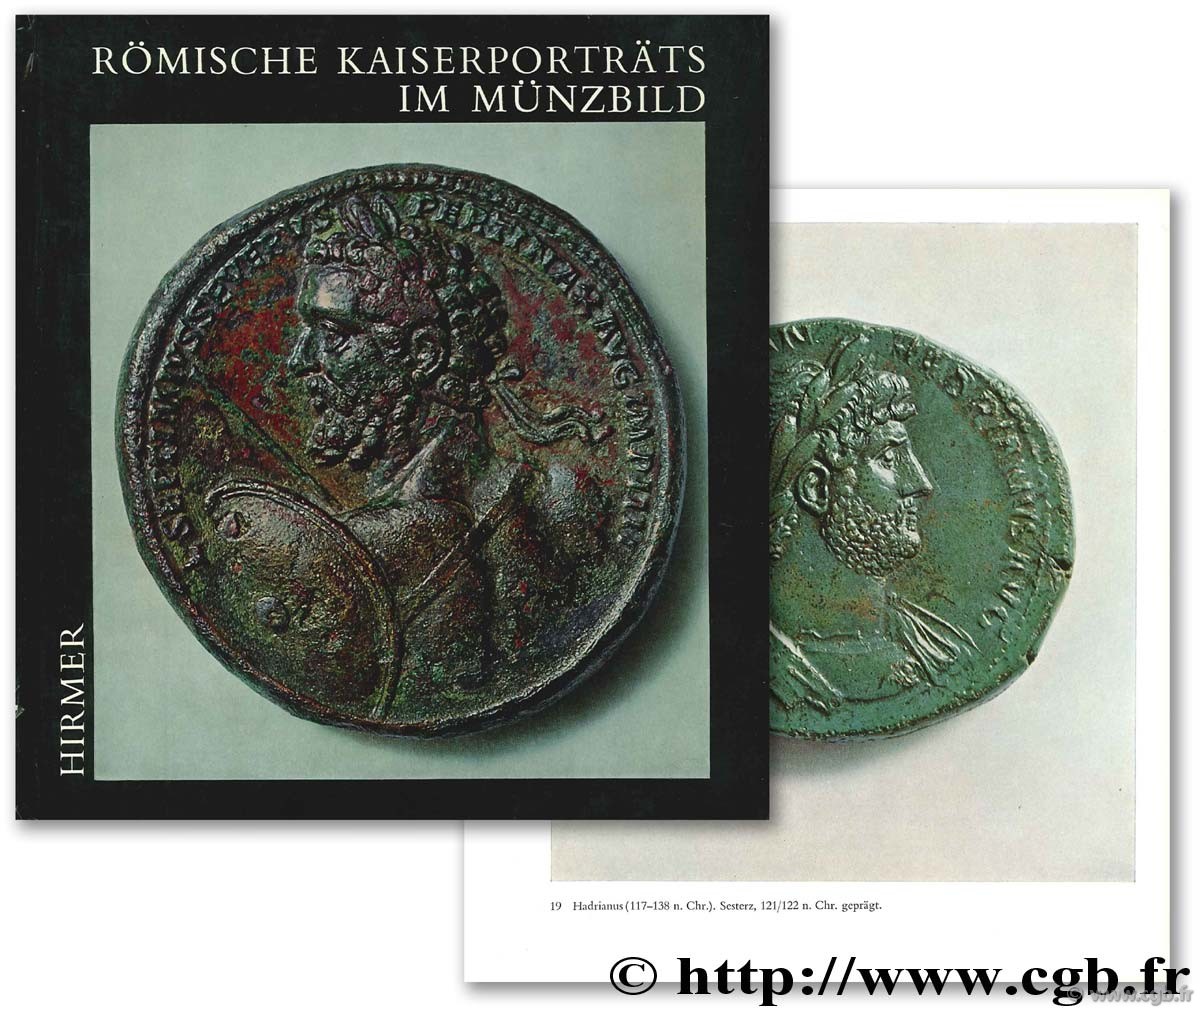 Römische Kaiserportäts im Münzbild HIRMER M.